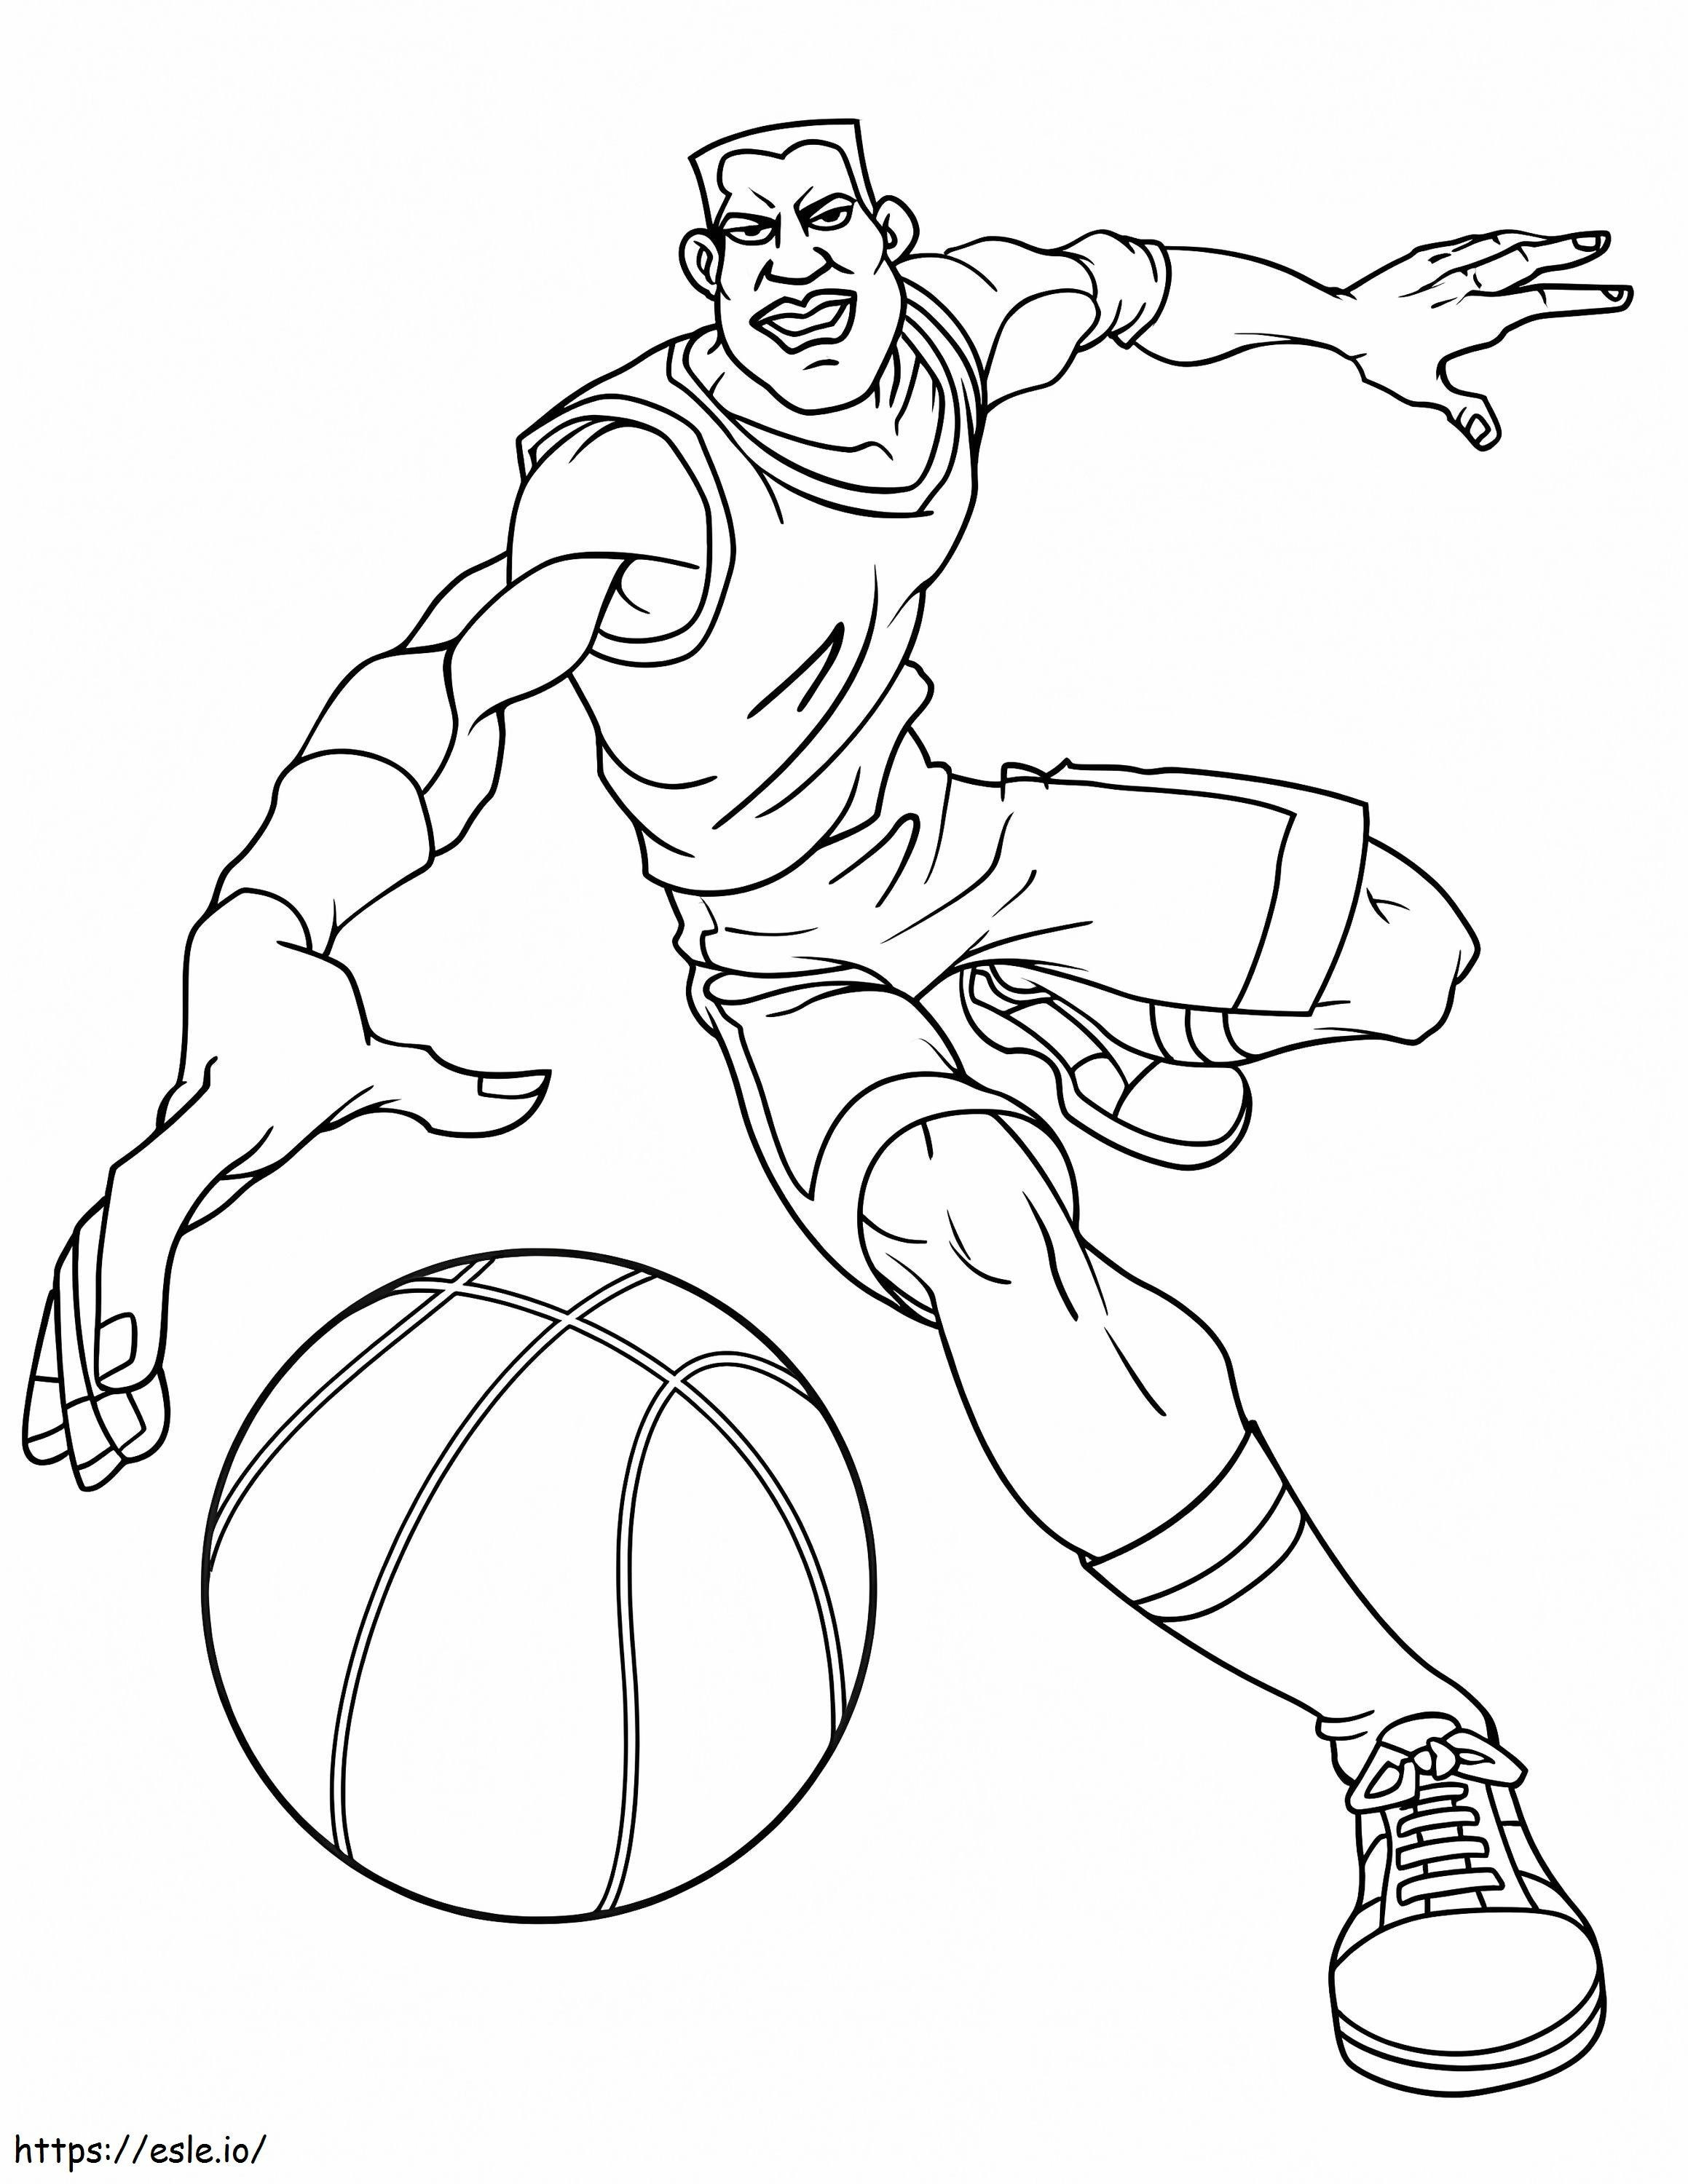 Człowiek biegający z koszykówką kolorowanka